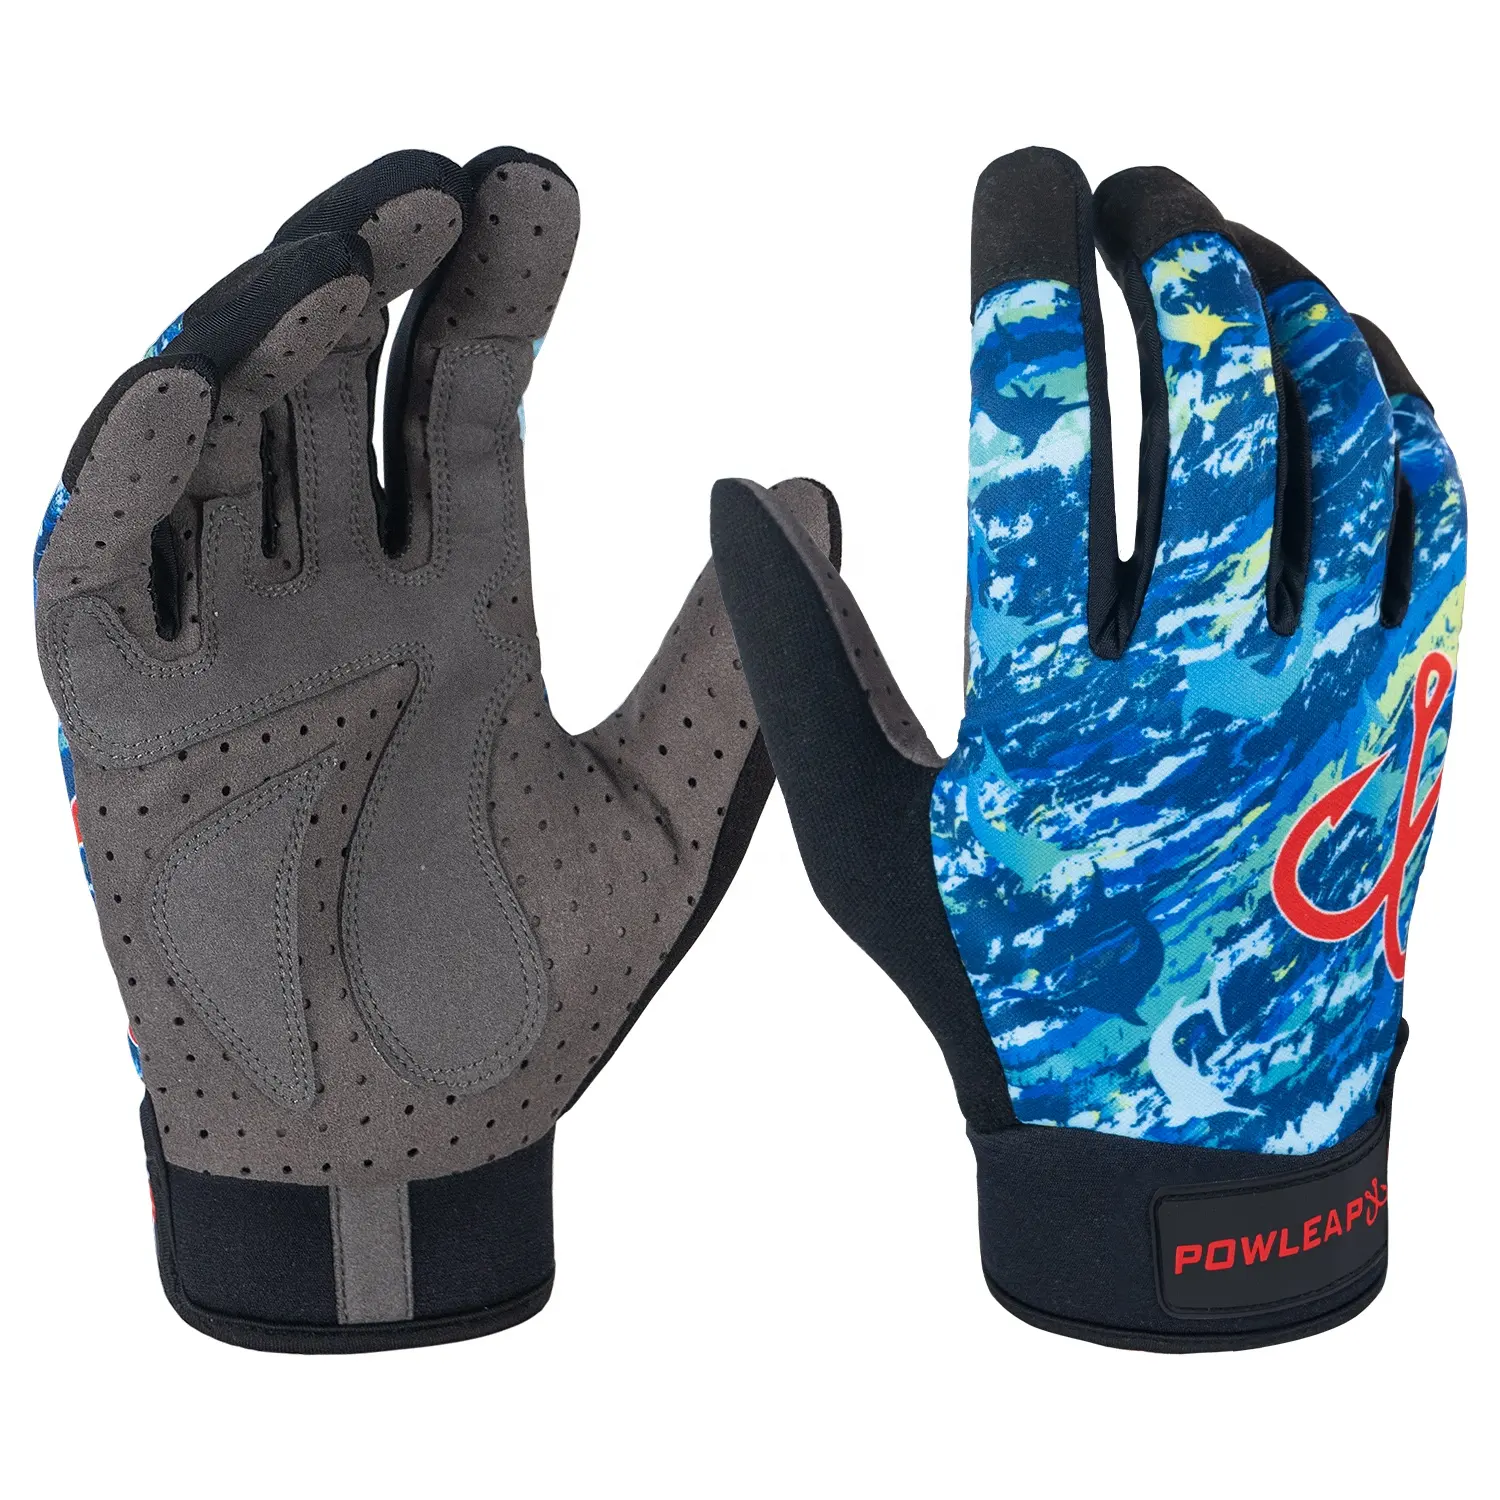 Nouveau stock arrivée gants de pêche portable séchage rapide doigt complet extensible résistant aux coupures gants de pêche